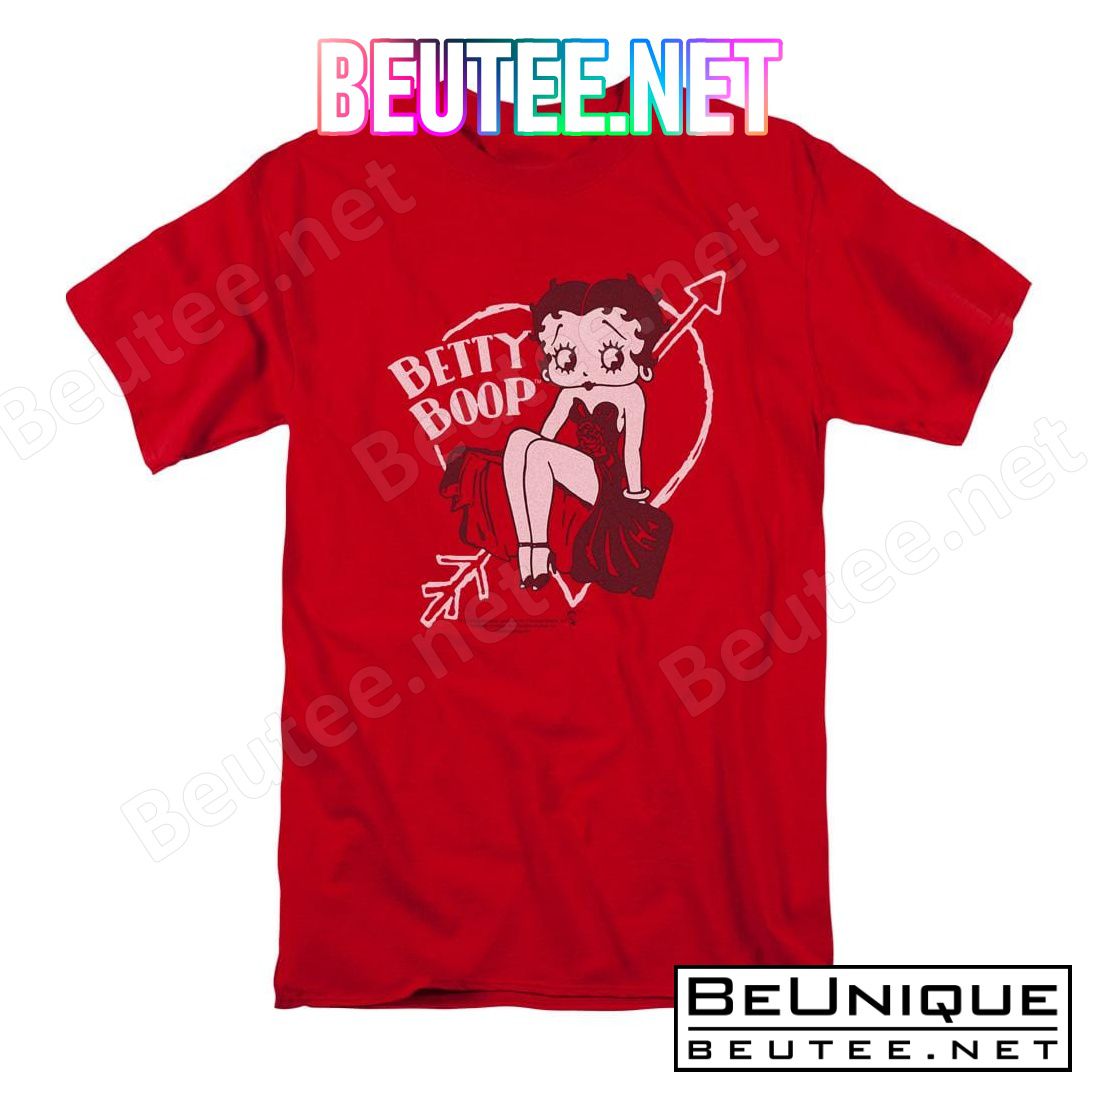 Betty Boop Lover Girl T-shirt